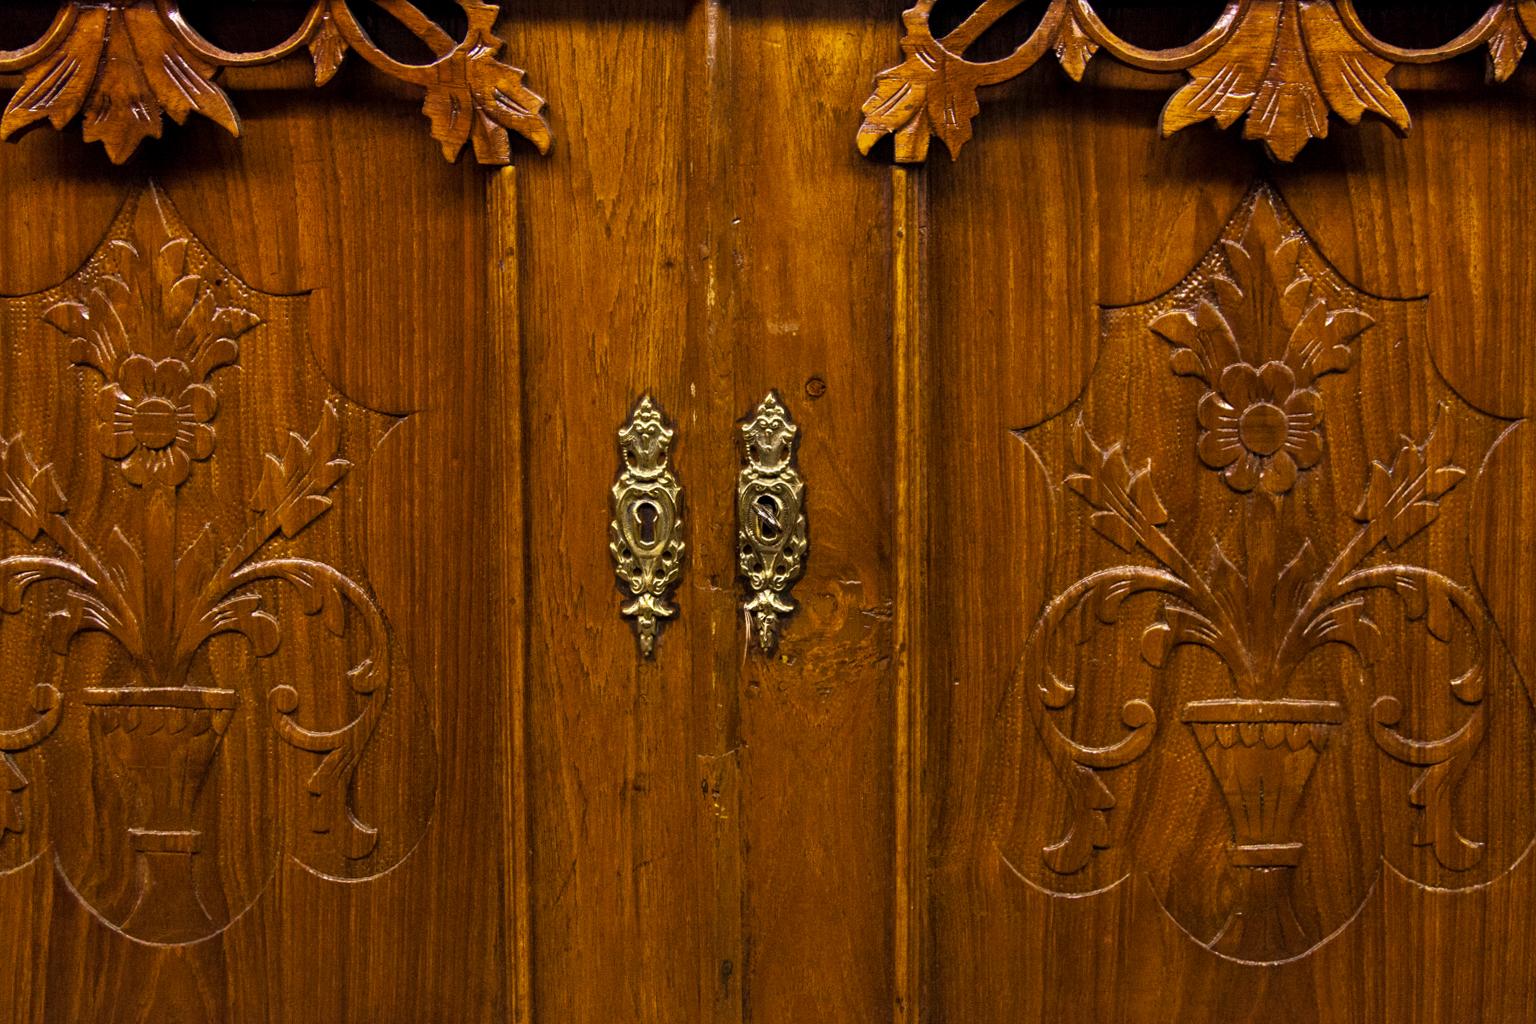 Armoire à portes vitrées sculptées en spirale, avec des feuilles et des vignes sculptées dans le fronton et la frise ; des appliques florales sculptées sur les portes supérieure et inférieure, un seul tiroir avec des feuillages sculptés ; des